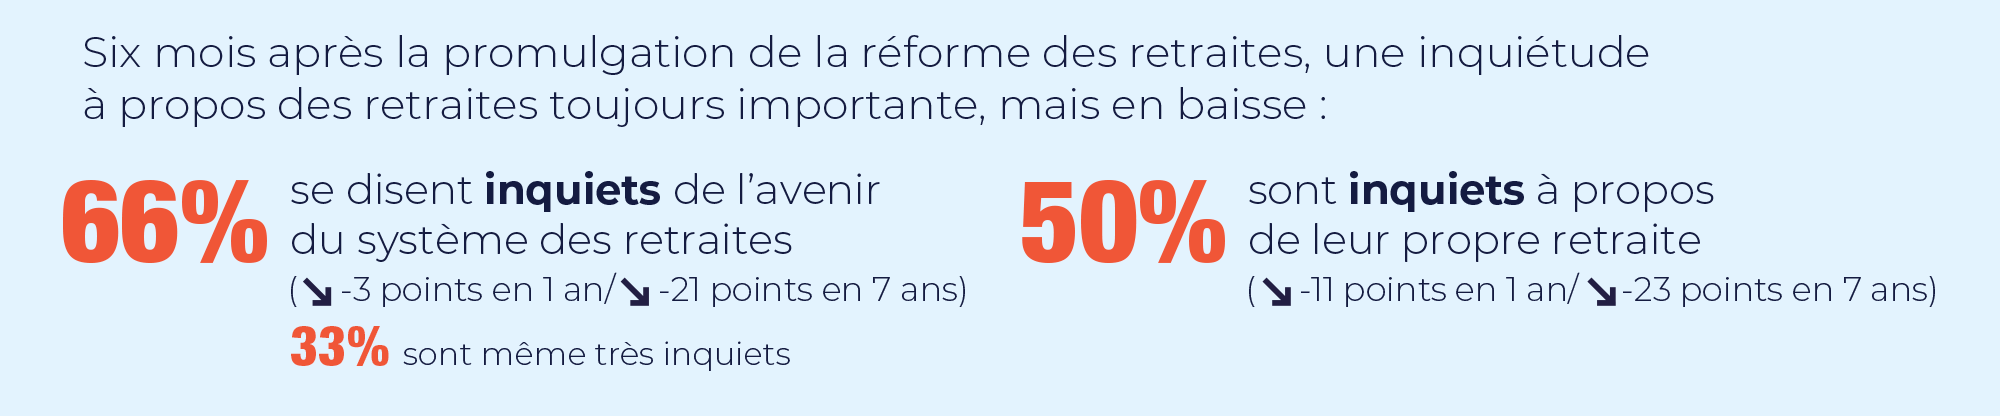 Les Français toujours inquiets sur le sujet des retraites